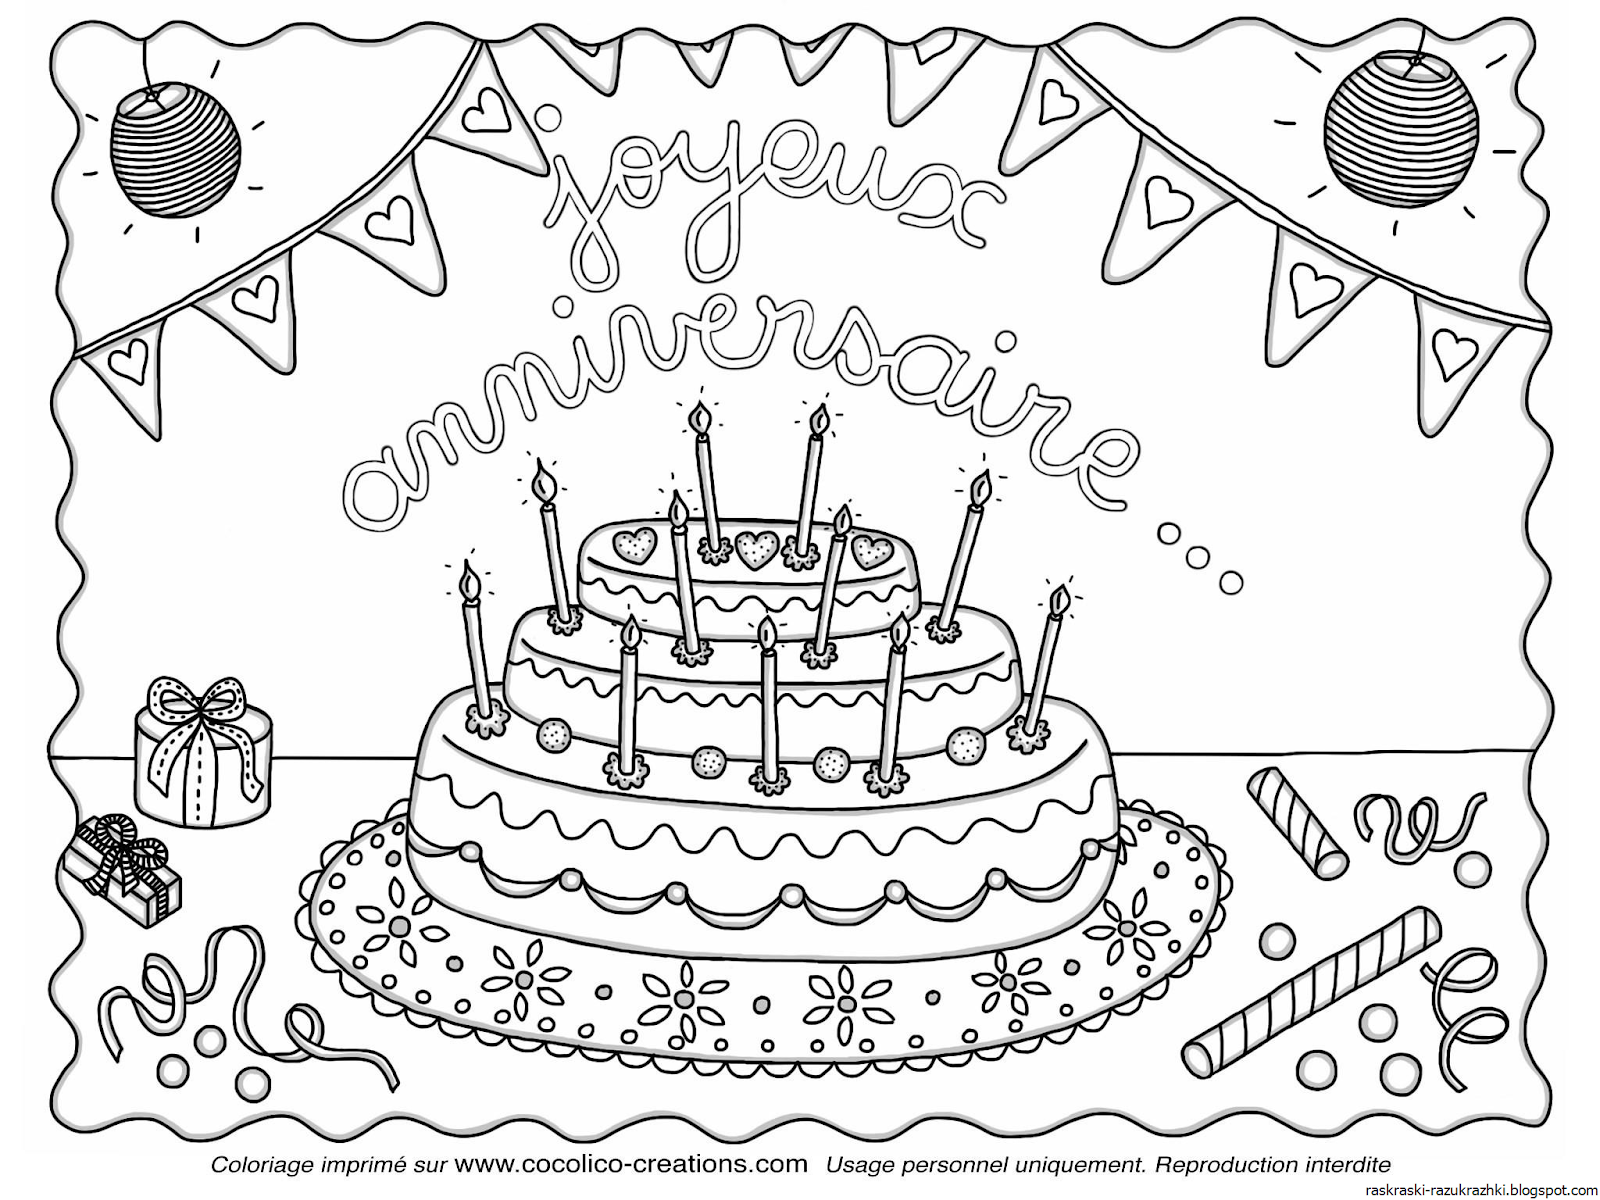 Раскраска открытка с днем рождения распечатать бесплатно | Раскраски, Рисунки, С днем рождения